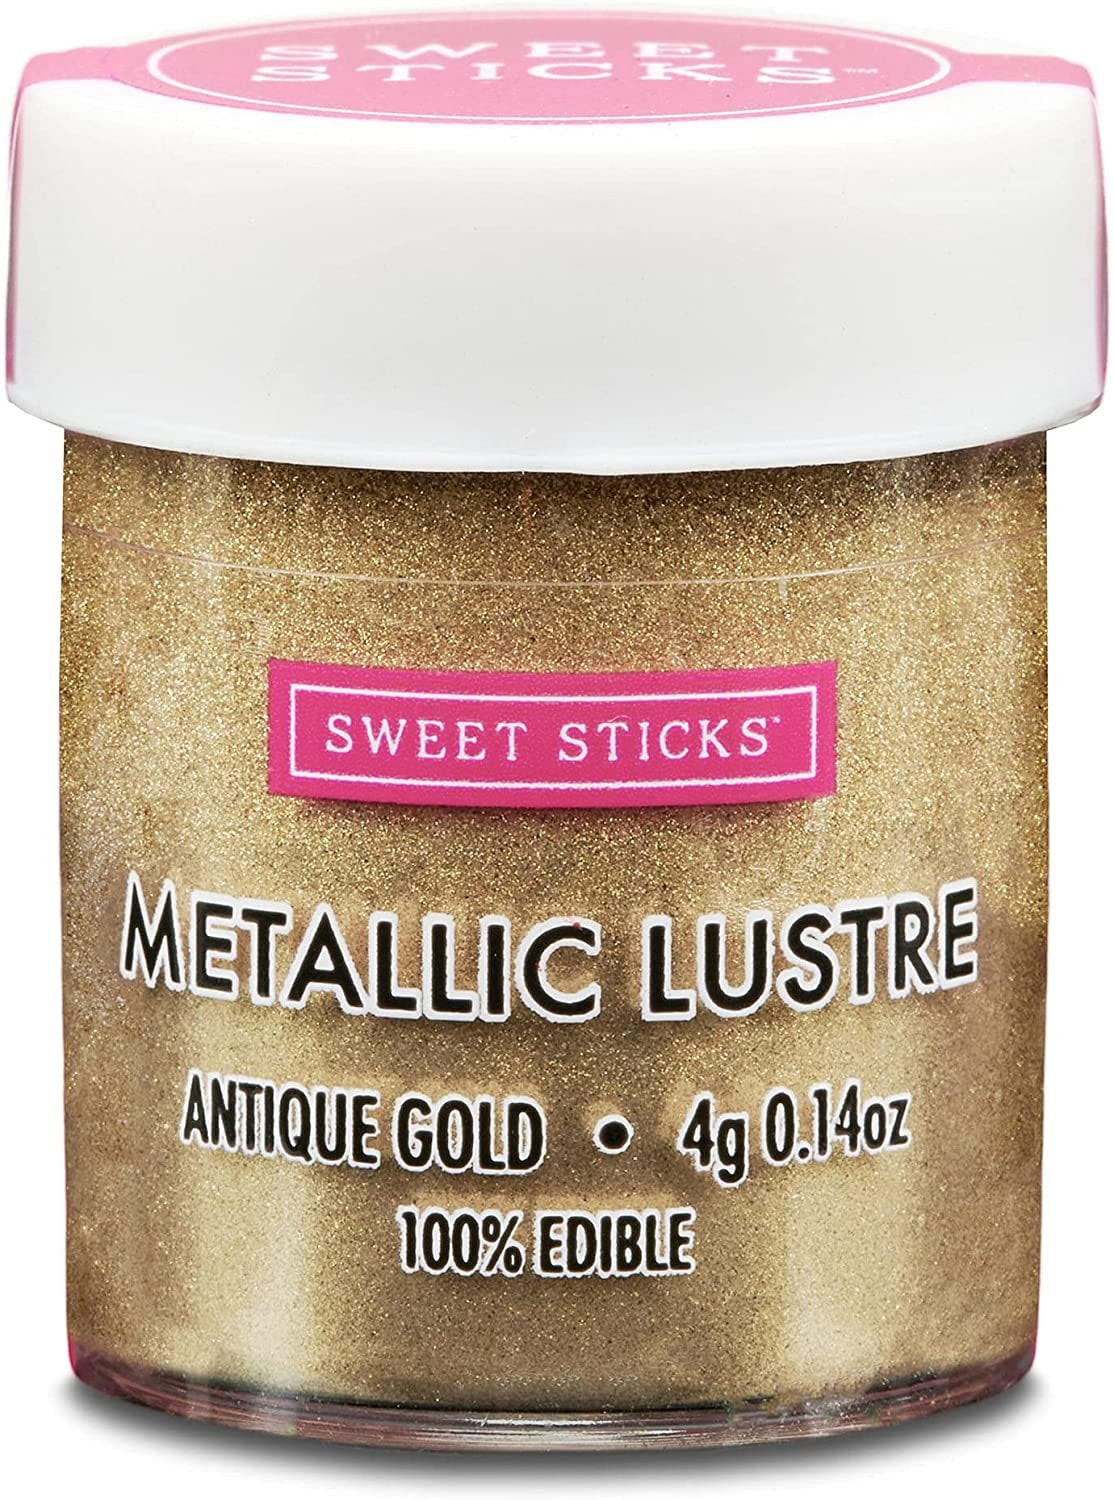 24K Gold Edible Luster Dust, 100% Dessert Glitter